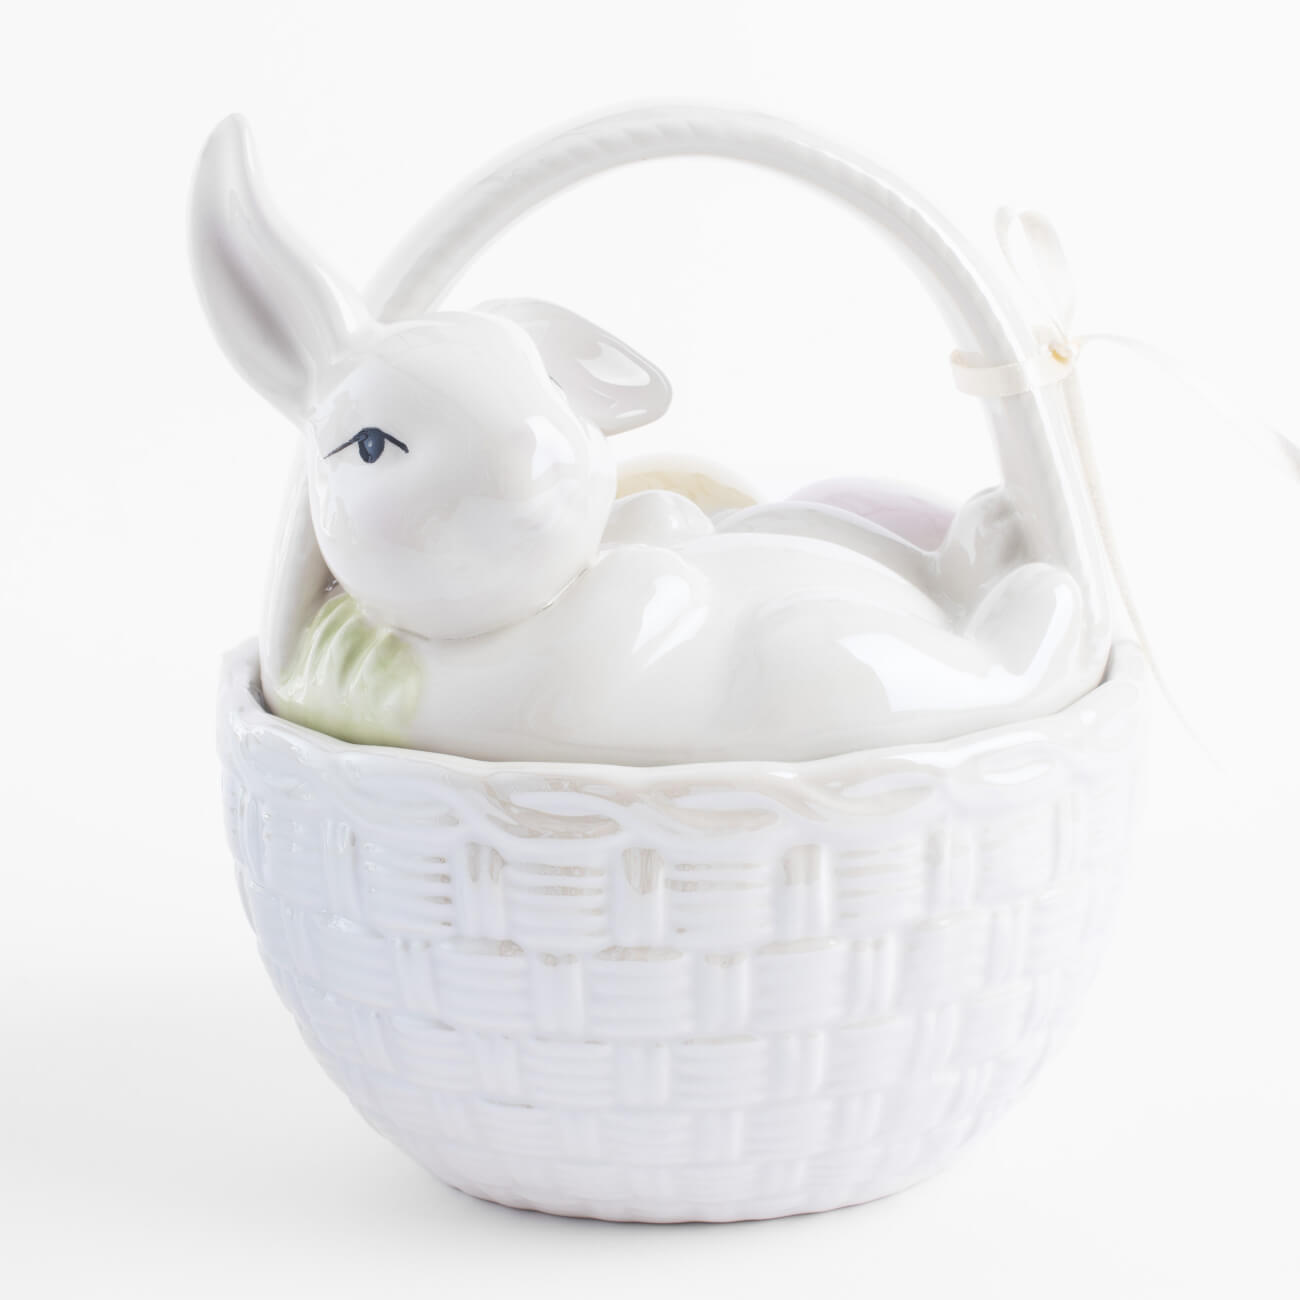 Емкость для хранения, 17х14 см, 1,5 л, с ручкой, керамика, молочная, перламутр, Кролик, Easter емкость для хранения 25х19 см 1 1 л керамика белая кролик с бабочкой easter